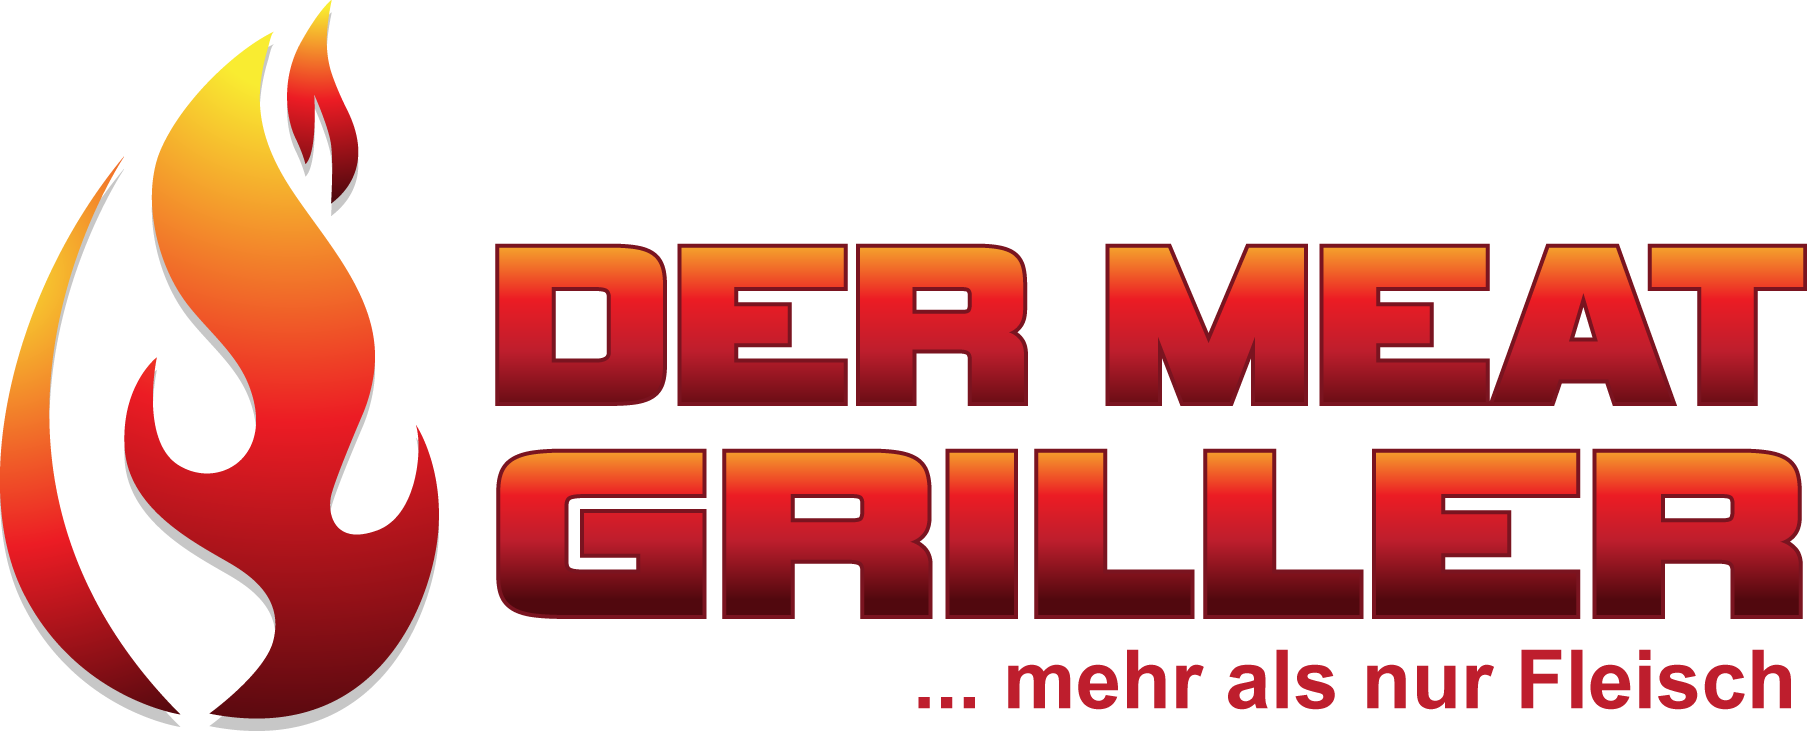 Meat Griller